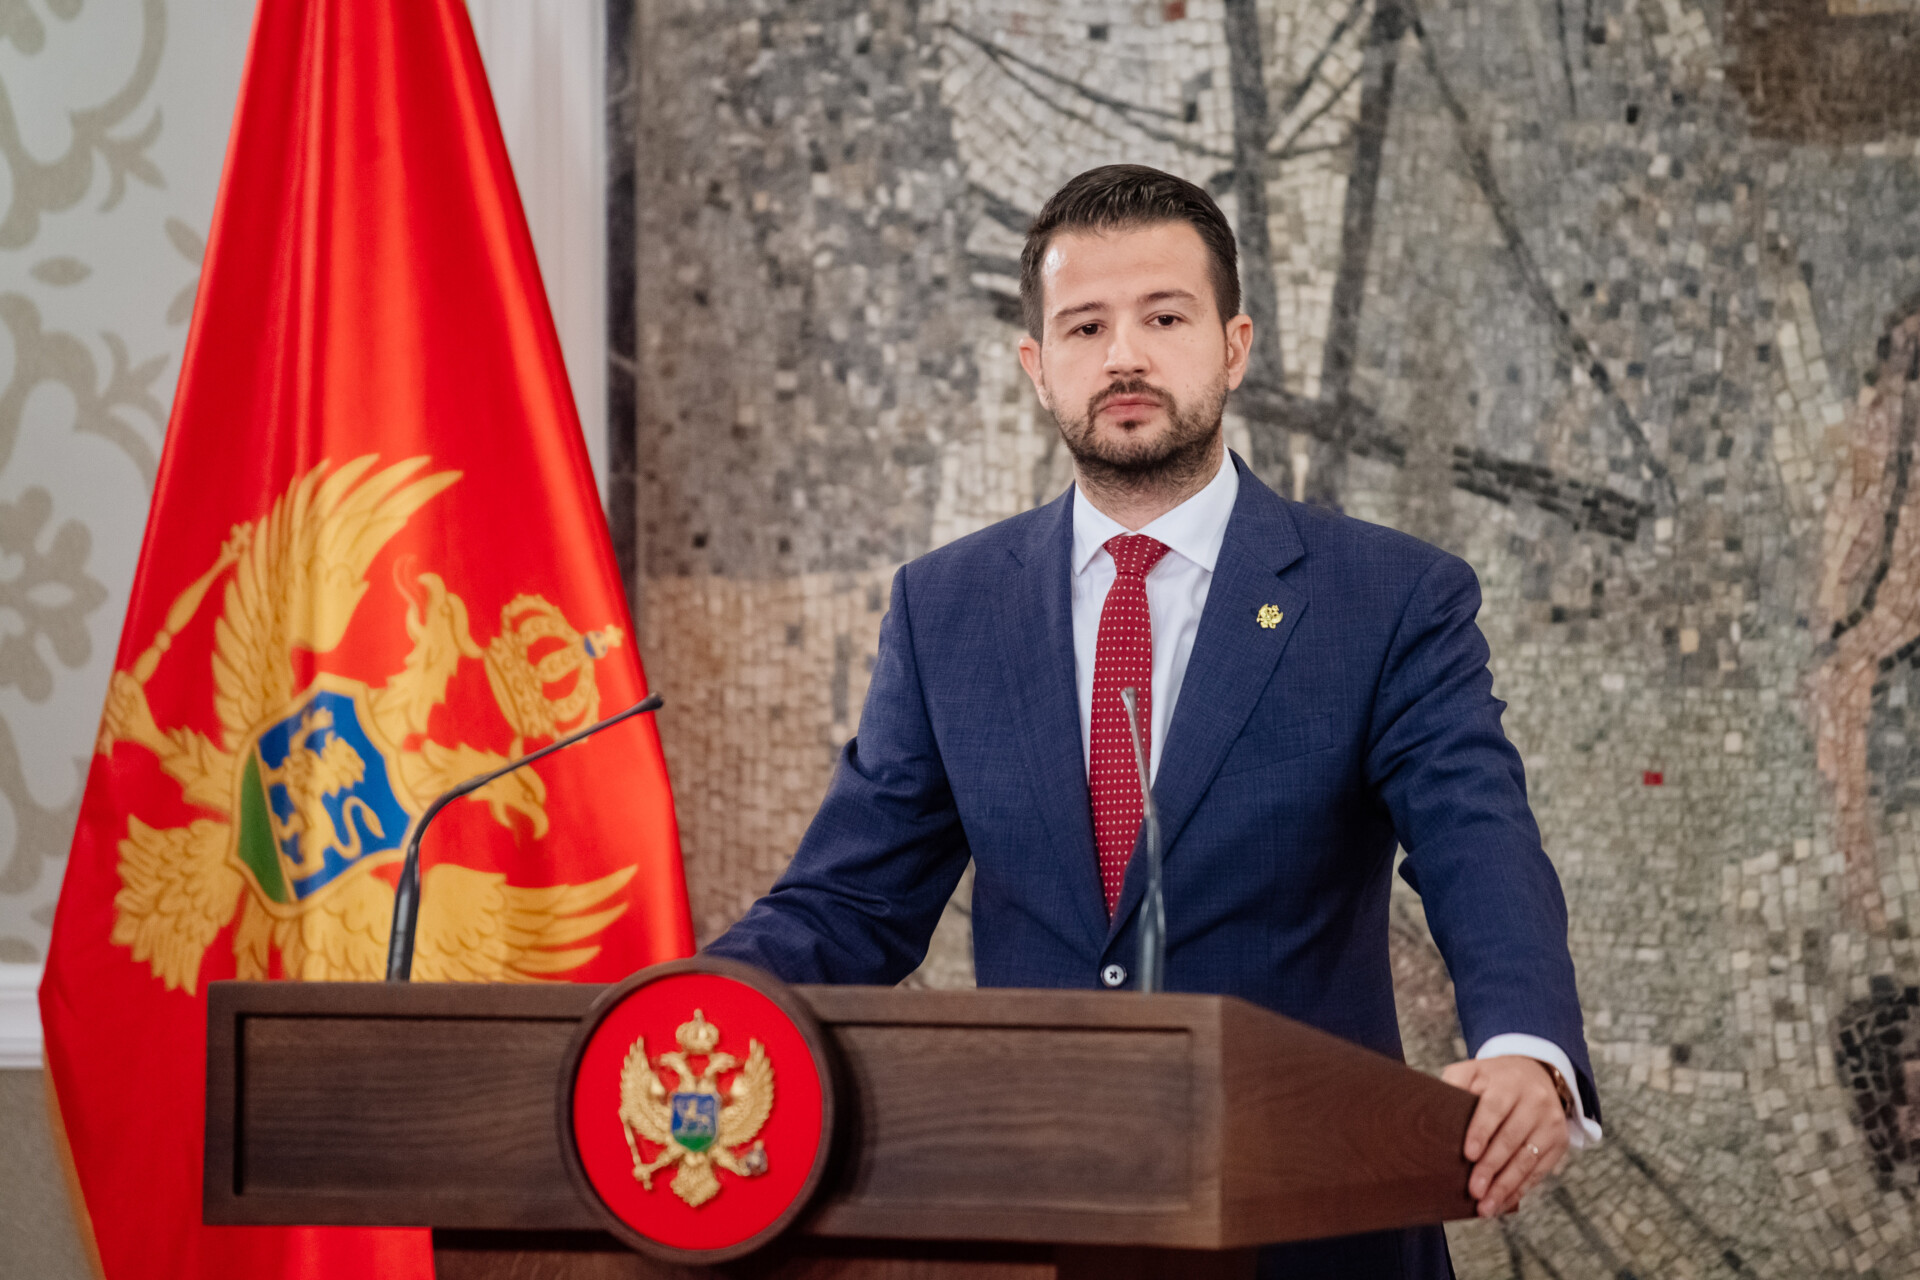 Nastavak dijaloga nakon izbora; Milatović: Za  napredak važna kohezija oko ključnih magistralnih pravaca razvoja, Crna  Gora naša zajednička sudbina